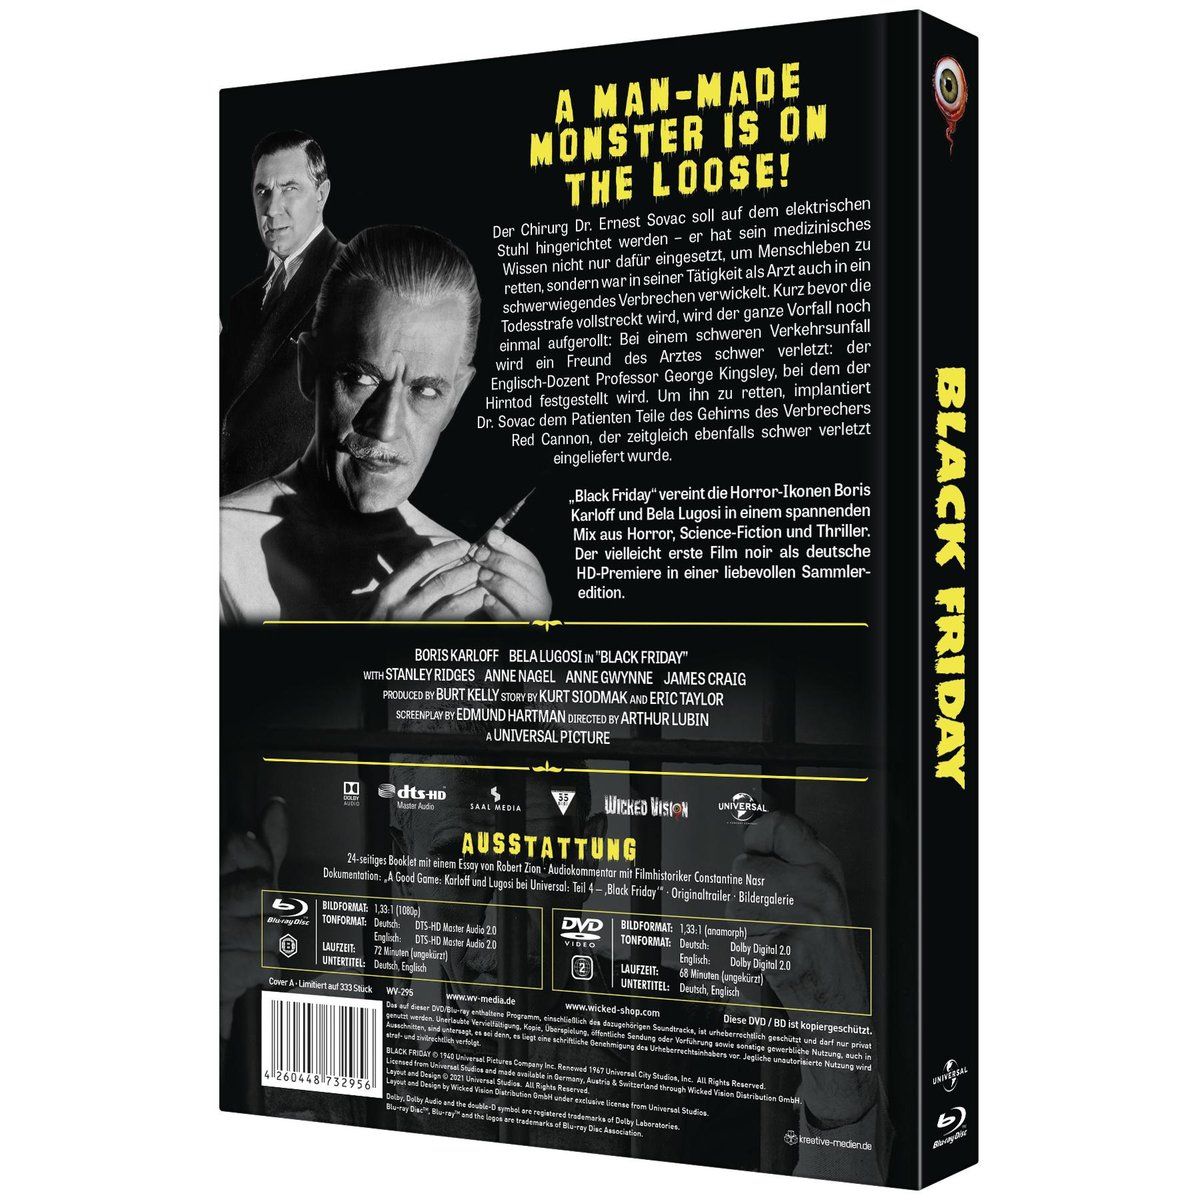 Black Friday - Uncut Mediabook Edition (DVD+blu-ray) (A)